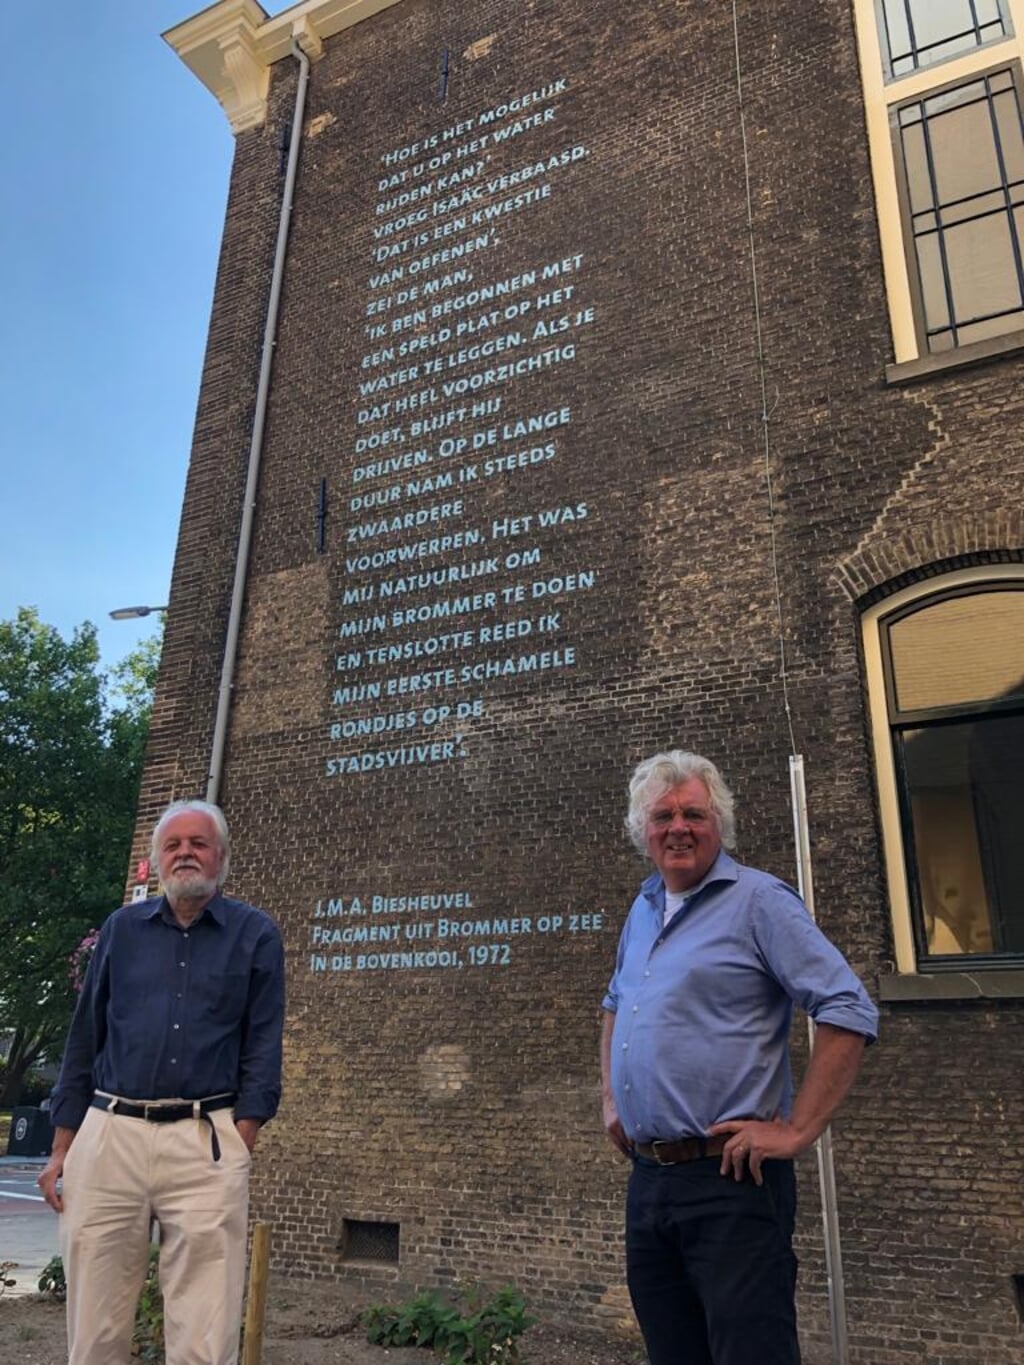 Hans Overheul en Jan van Bergen en Henegouwen zijn blij met het tekstfragment van J.M.A. Biesheuvel aan de muur van het Blauwhuis.